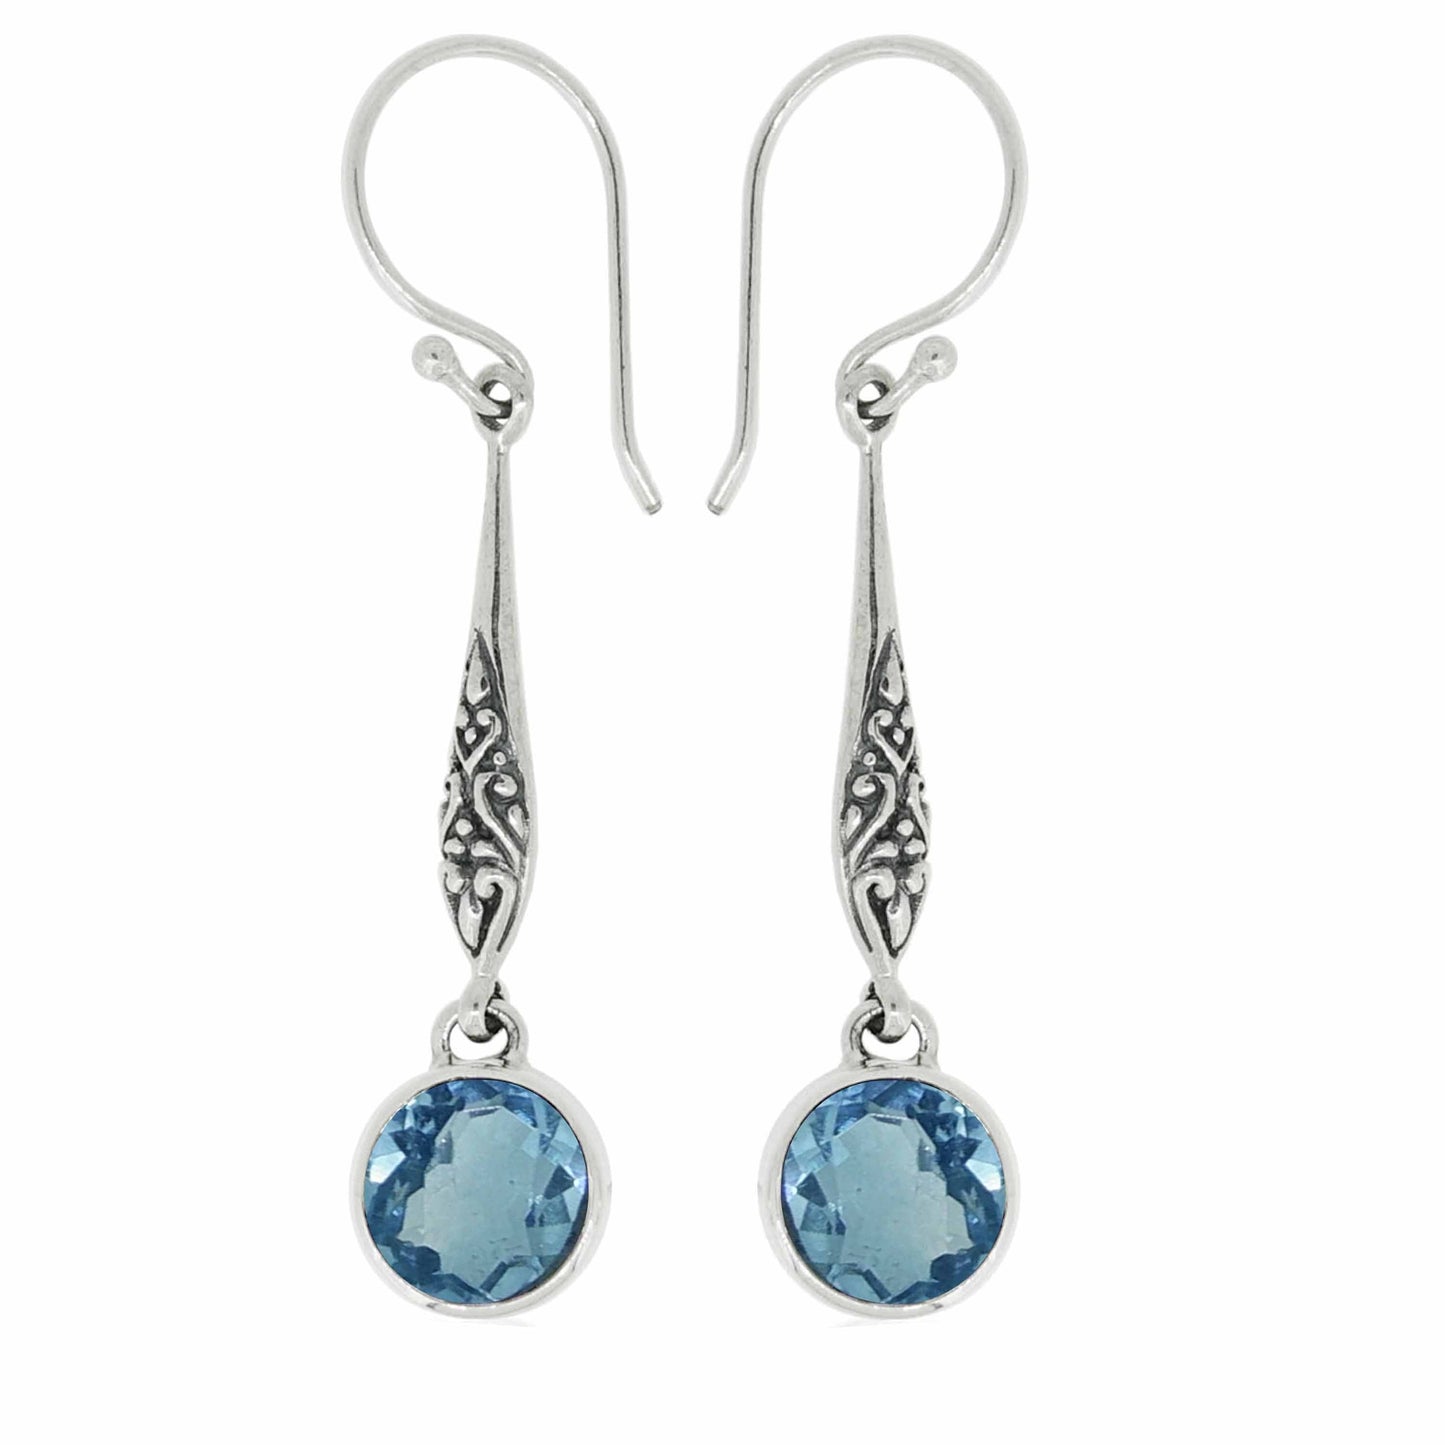 Earring Gemstones - 82319